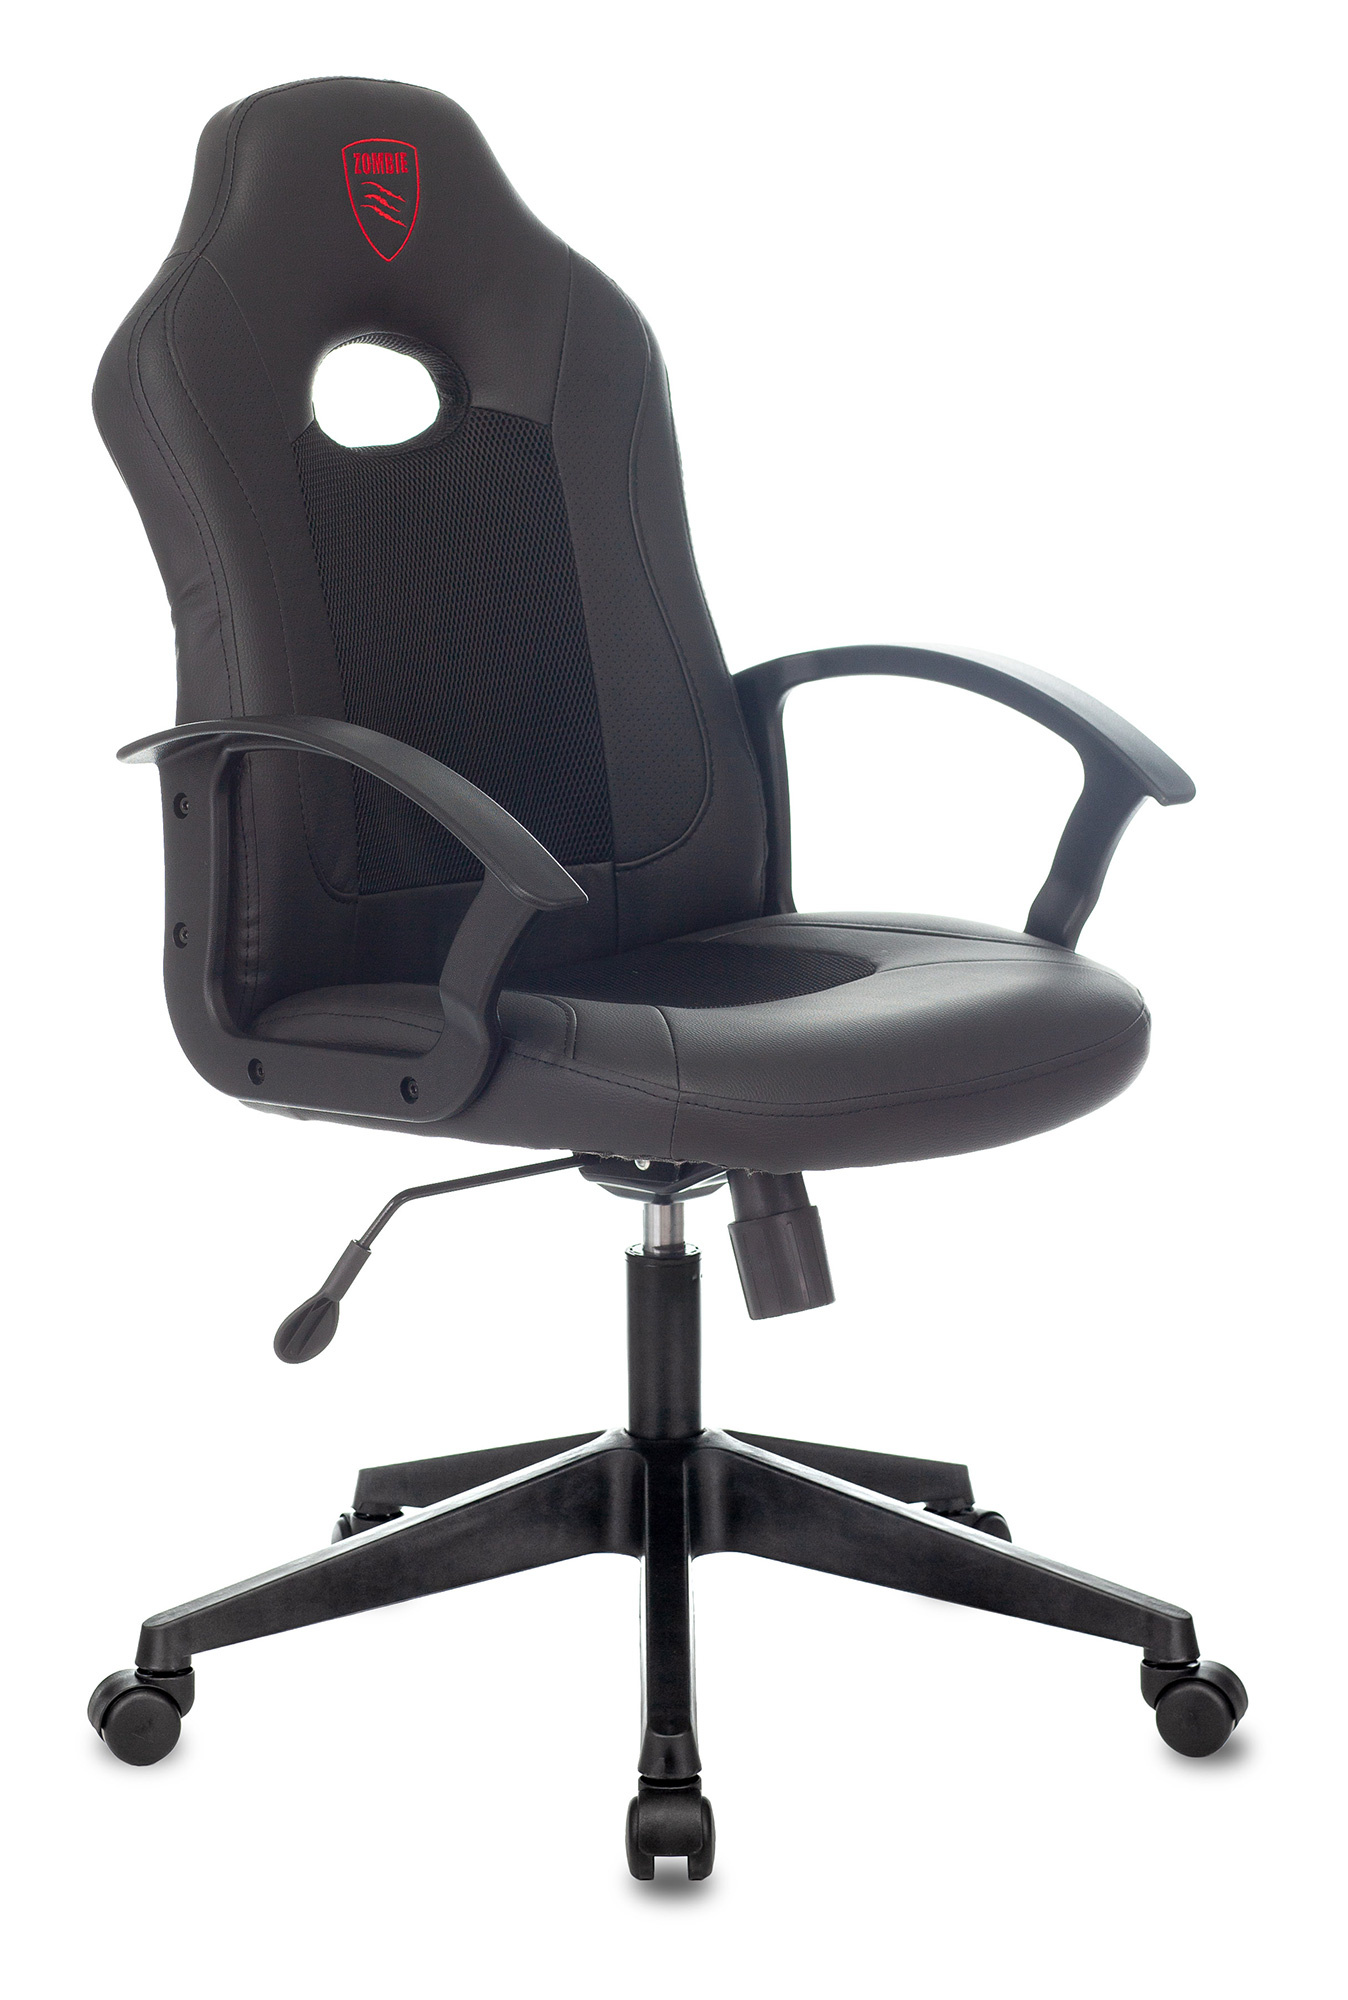 компьютерное кресло zombie 8 игровое обивка искусственная кожа цвет черный